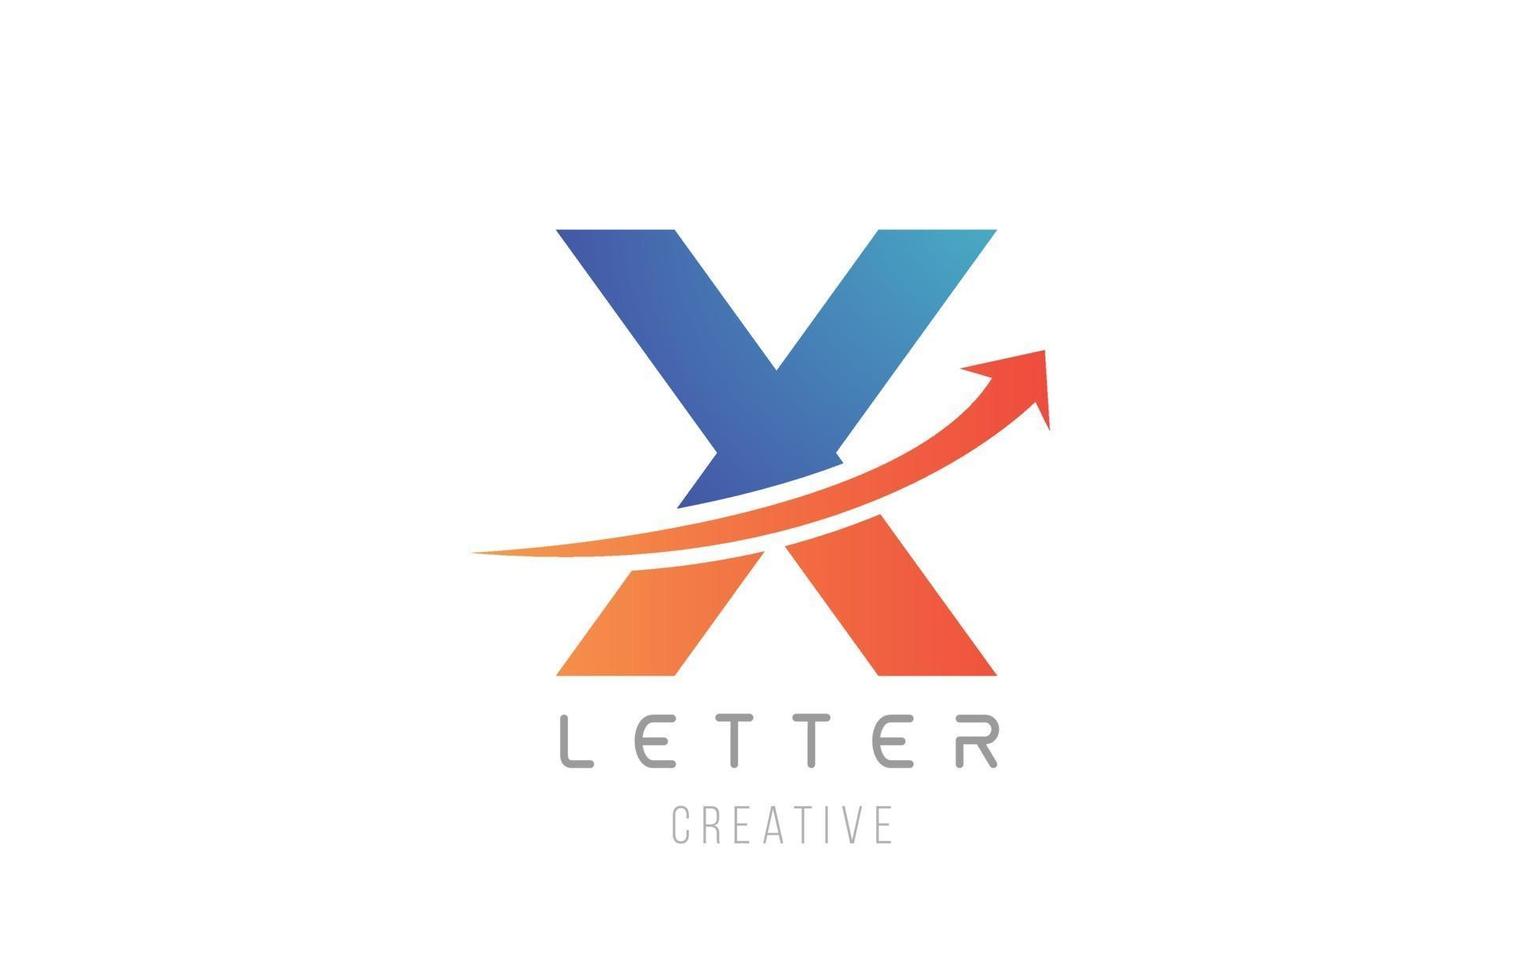 conception d'icône alphabet bleu orange x lettre pour modèle d'entreprise vecteur